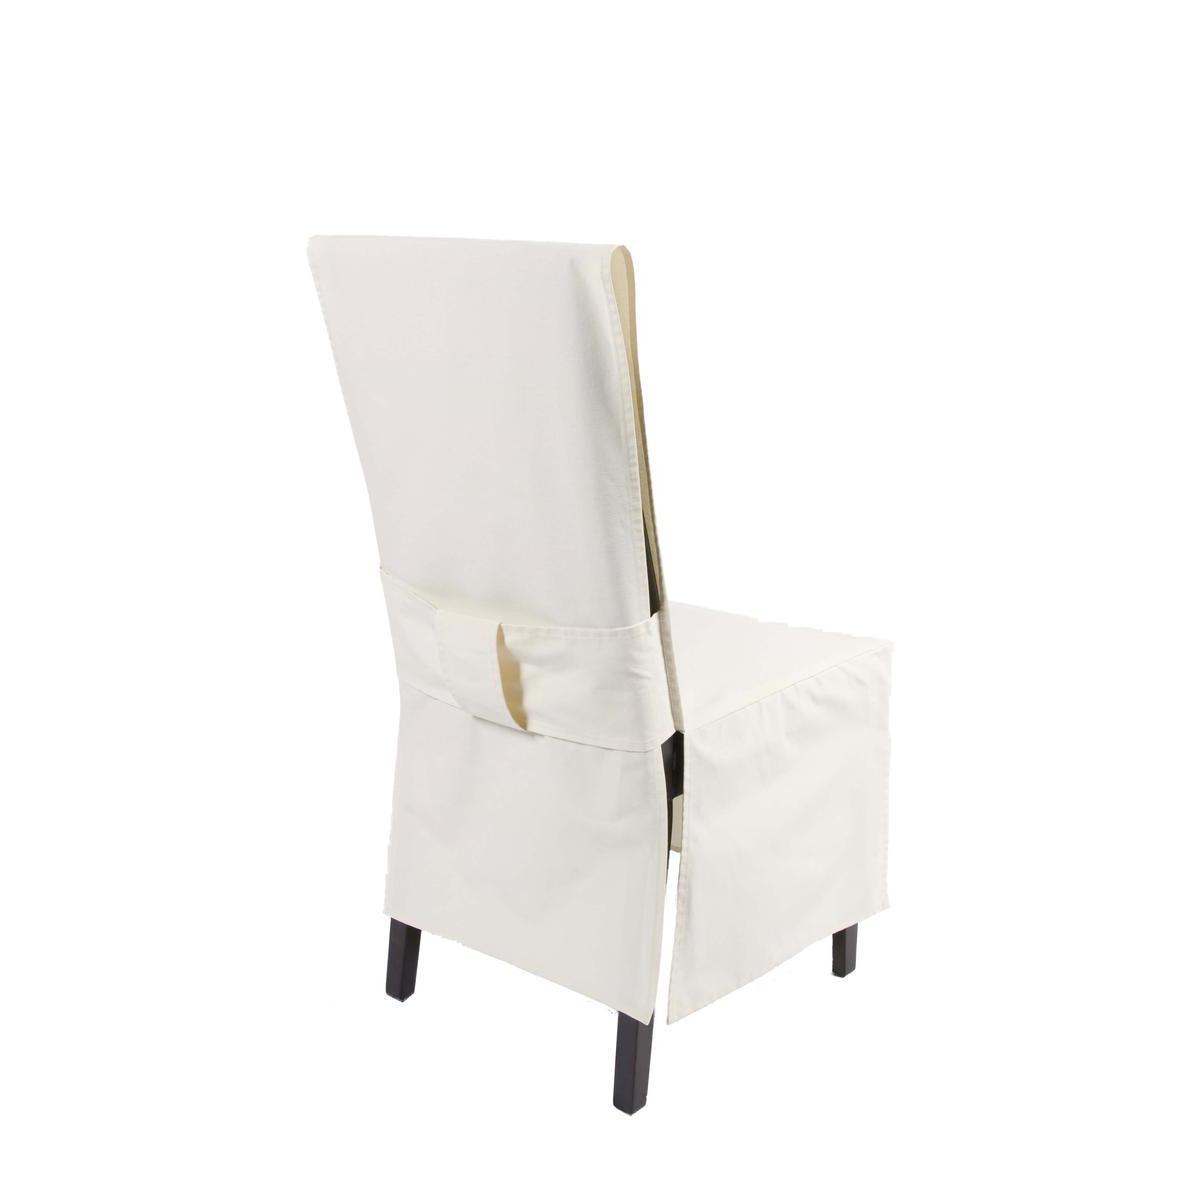 Housse de chaise dos droit - Polyester - 45 x 45 x H 100 cm - Beige écru